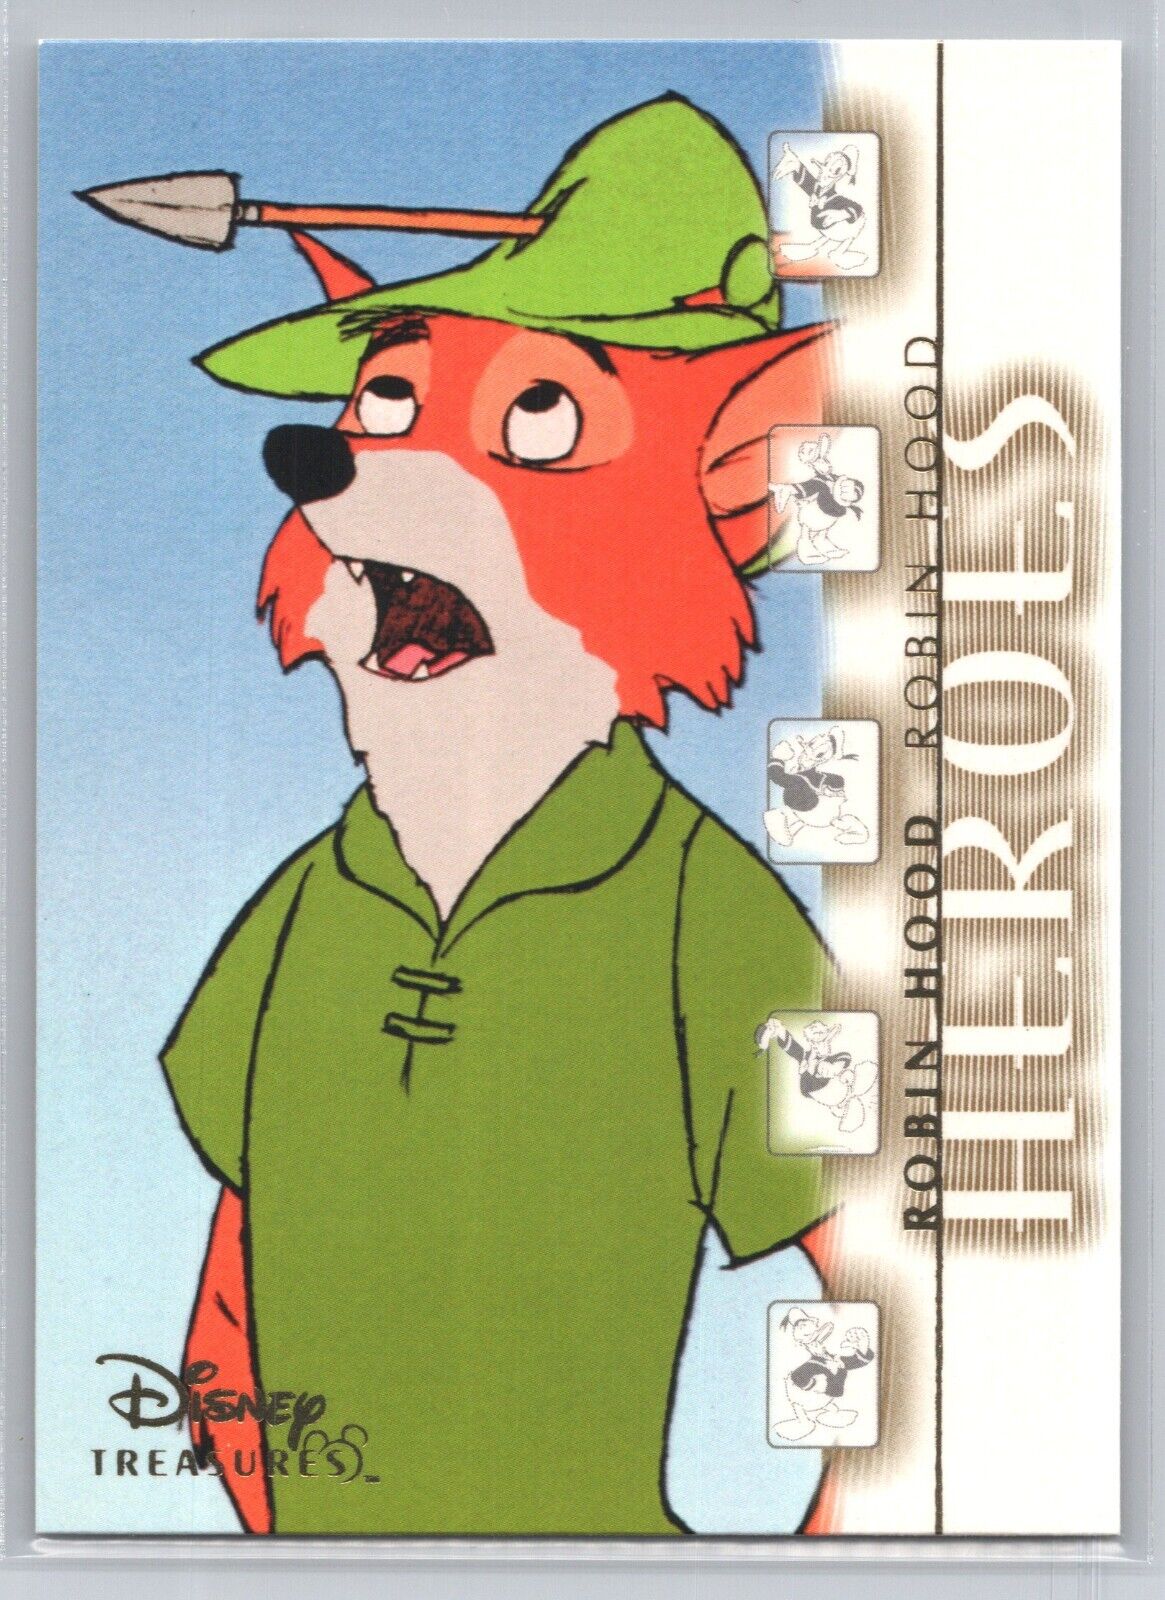 2003 Disney Treasures #153 - Heroes - Robin Hood Robin Hood